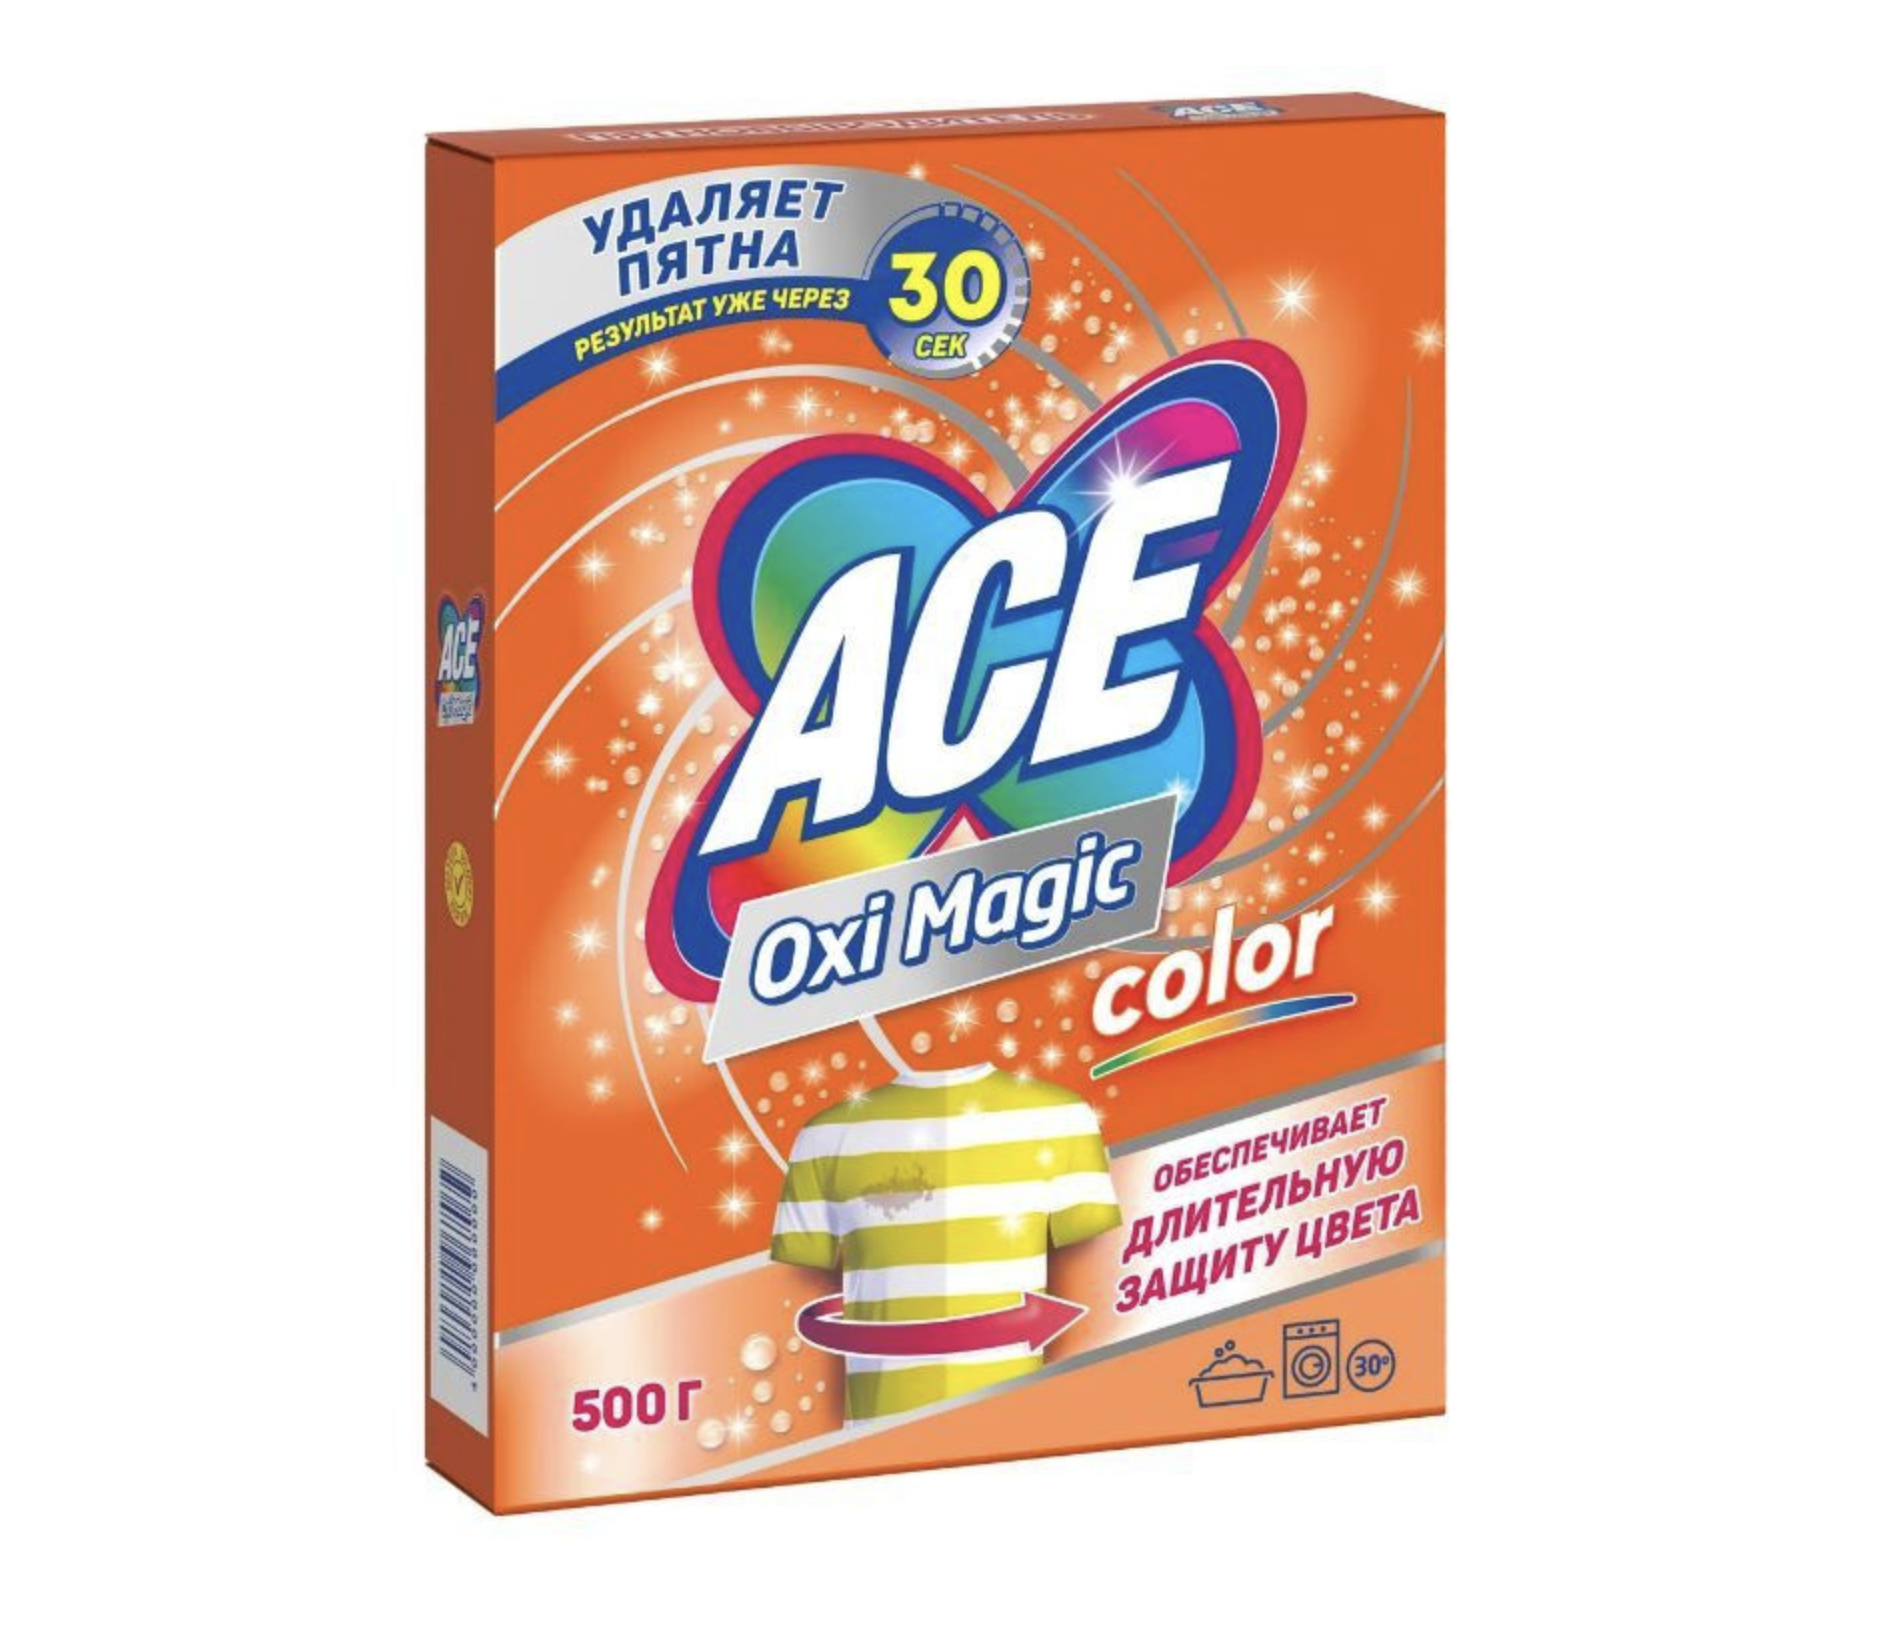   / Ace Oxi Magic Color -      500 